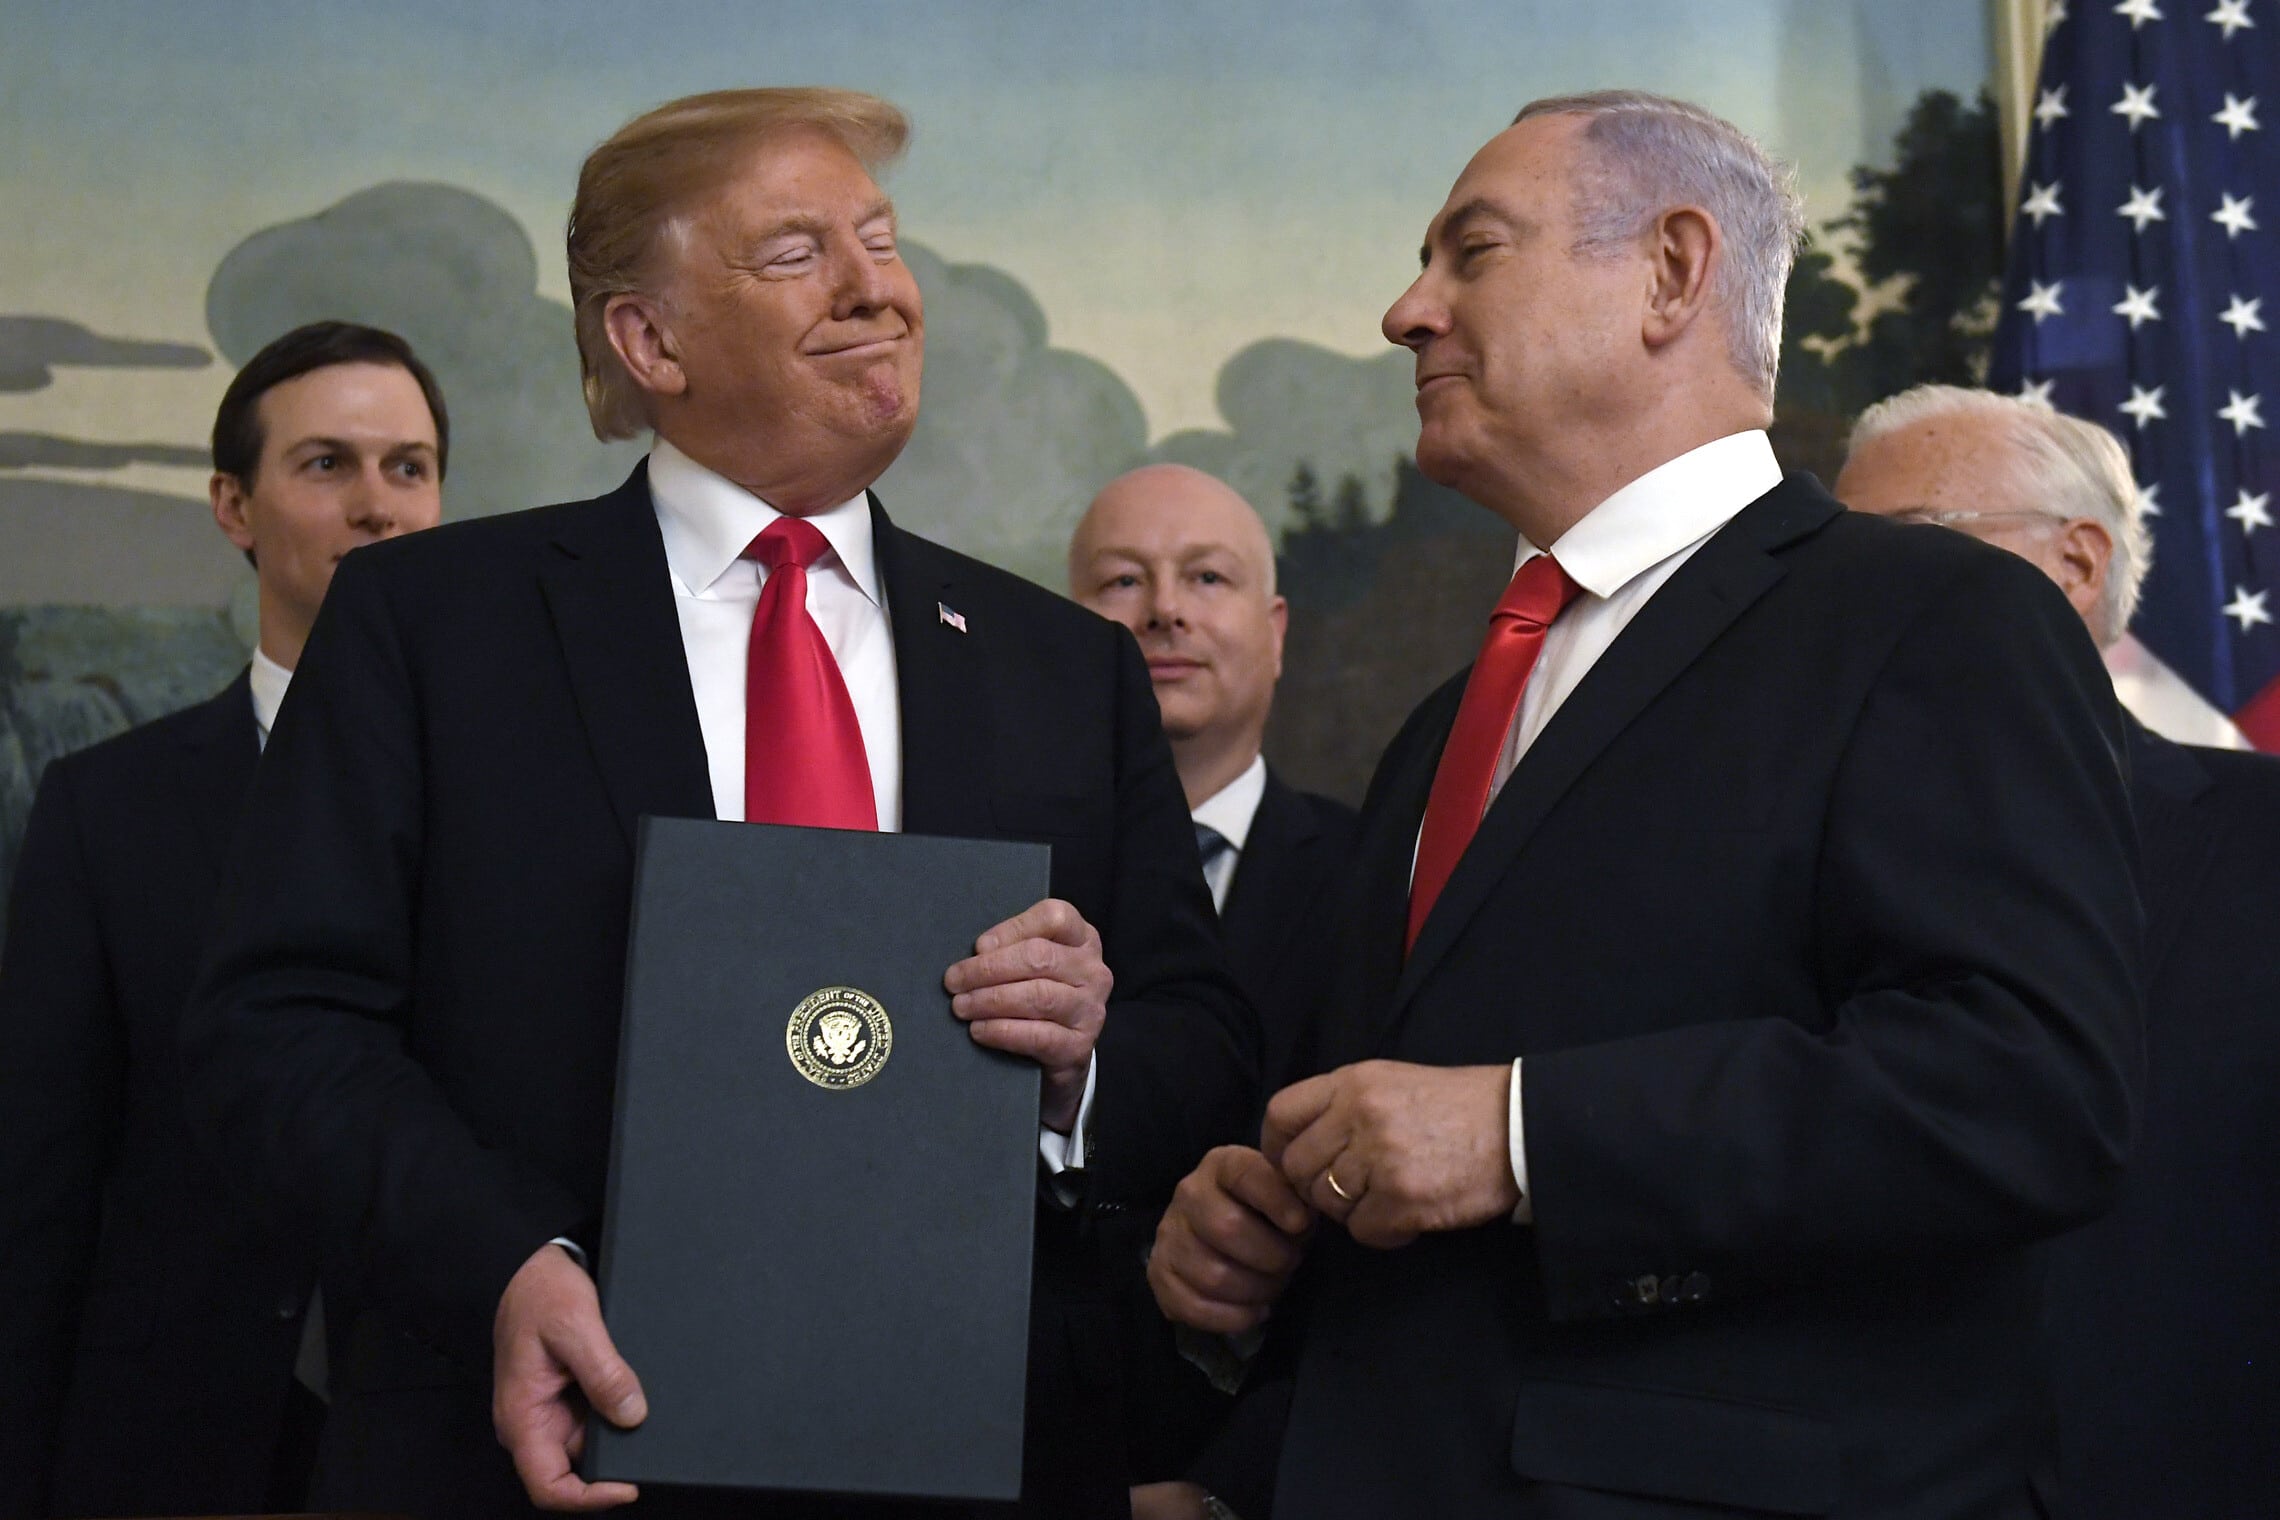 בנימין נתניהו ודולנד טראמפ בבית הלבן, ב-25 במרץ 2019, כשטראמפ חתם על הצהרה המכירה בריבונות ישראל ברמת הגולן (צילום: AP Photo/Susan Walsh)